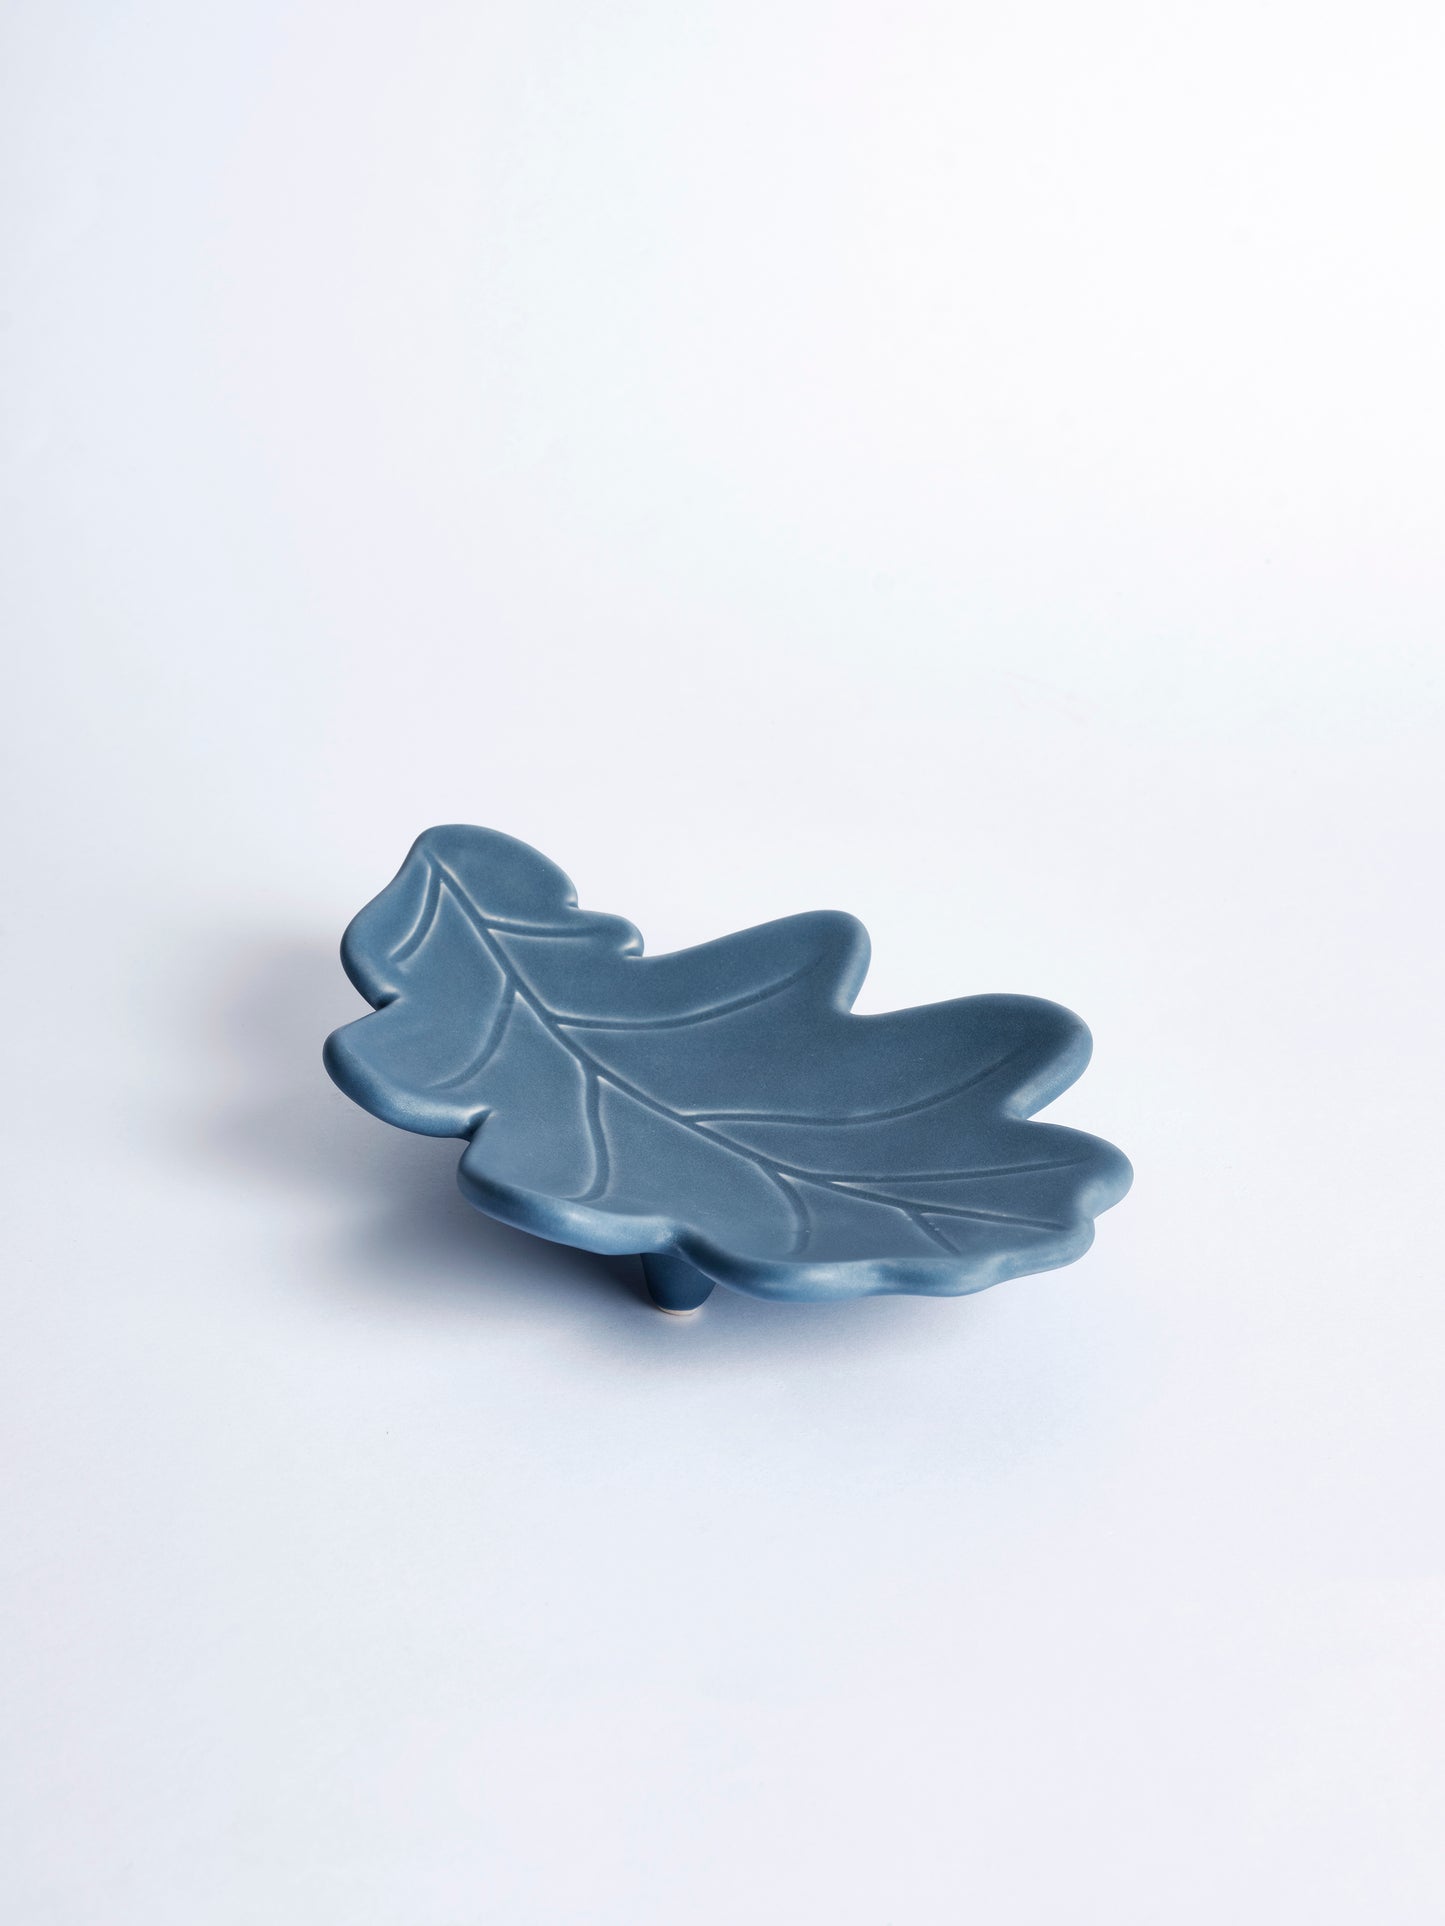 Handmade Ceramic Leaf Dish